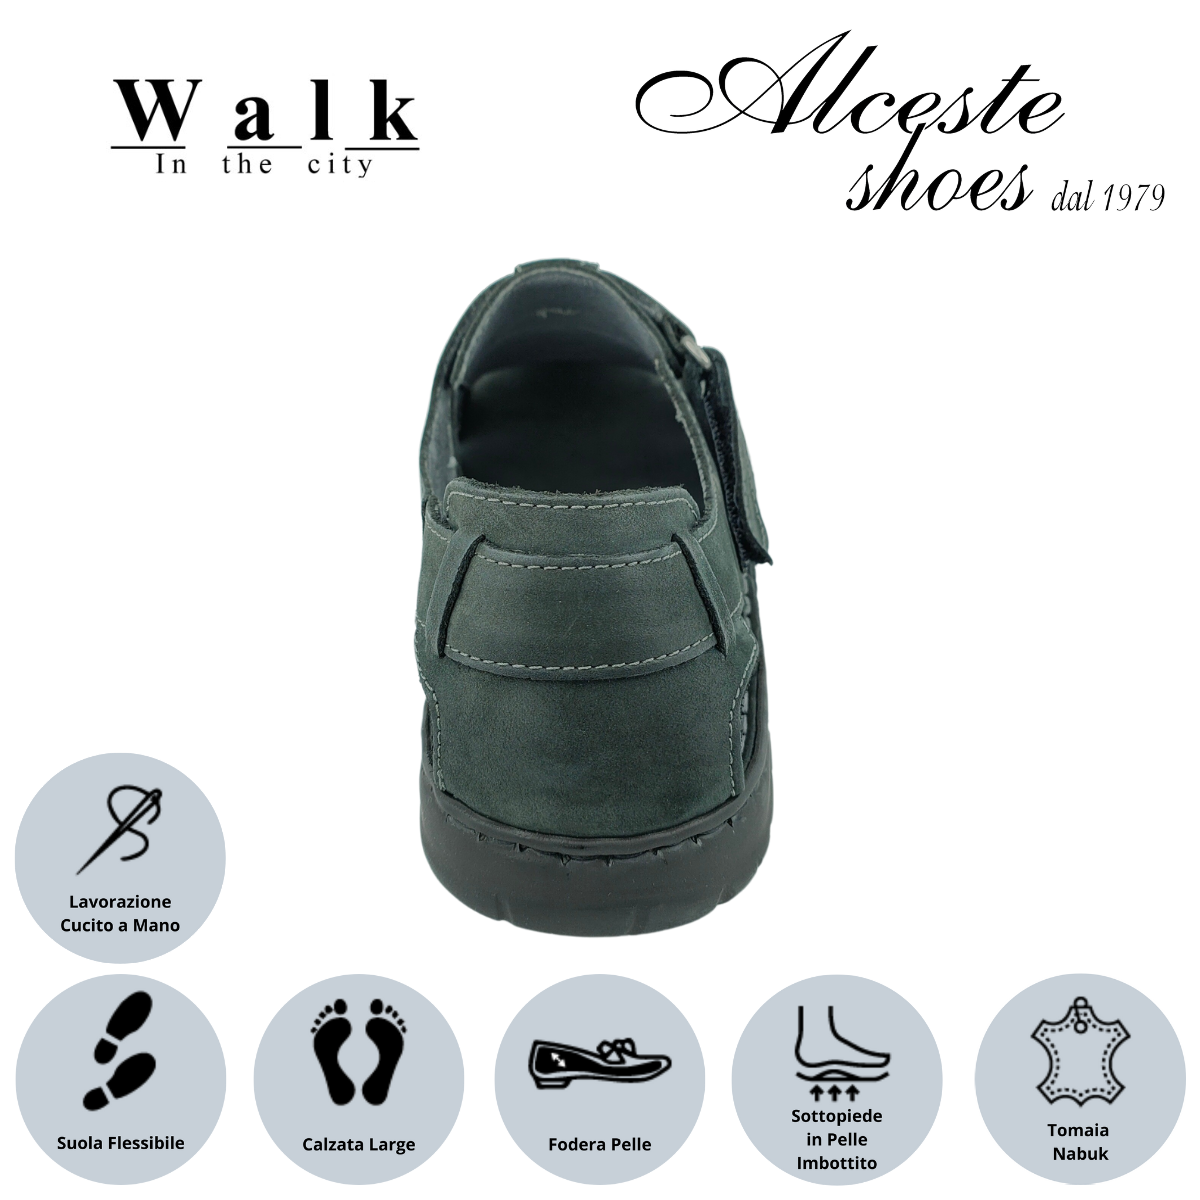 Sandalo Uomo Chiusura con Velcro "Walk in The City" Art. 20910 Nabuk Nero Alceste Shoes 28